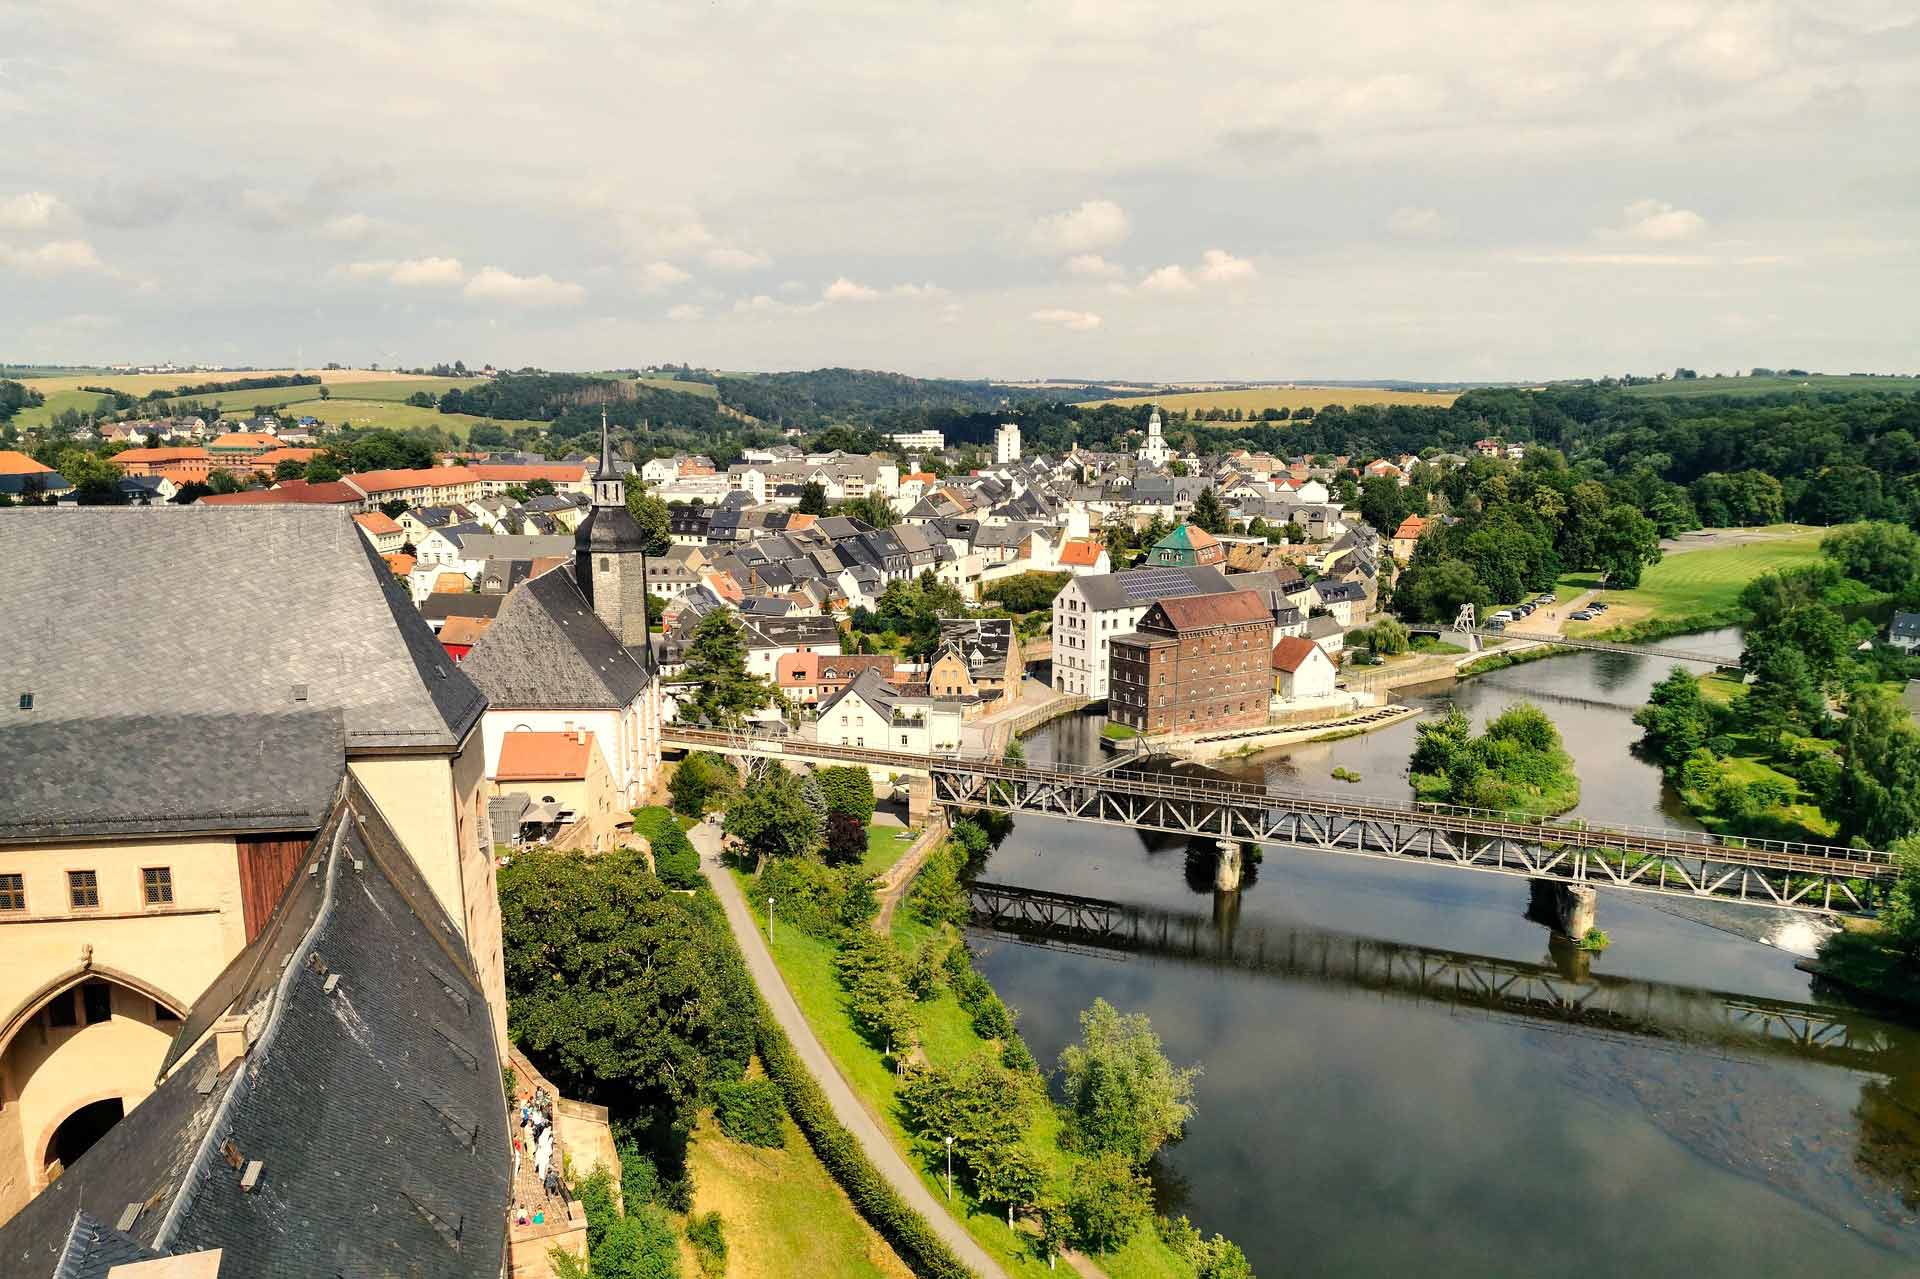 Erhaben thront Schloss Rochlitzberg über der Landschaft, ein eindrucksvolles Zeugnis vergangener Pracht und Geschichte, das bis heute fasziniert und beeindruckt.